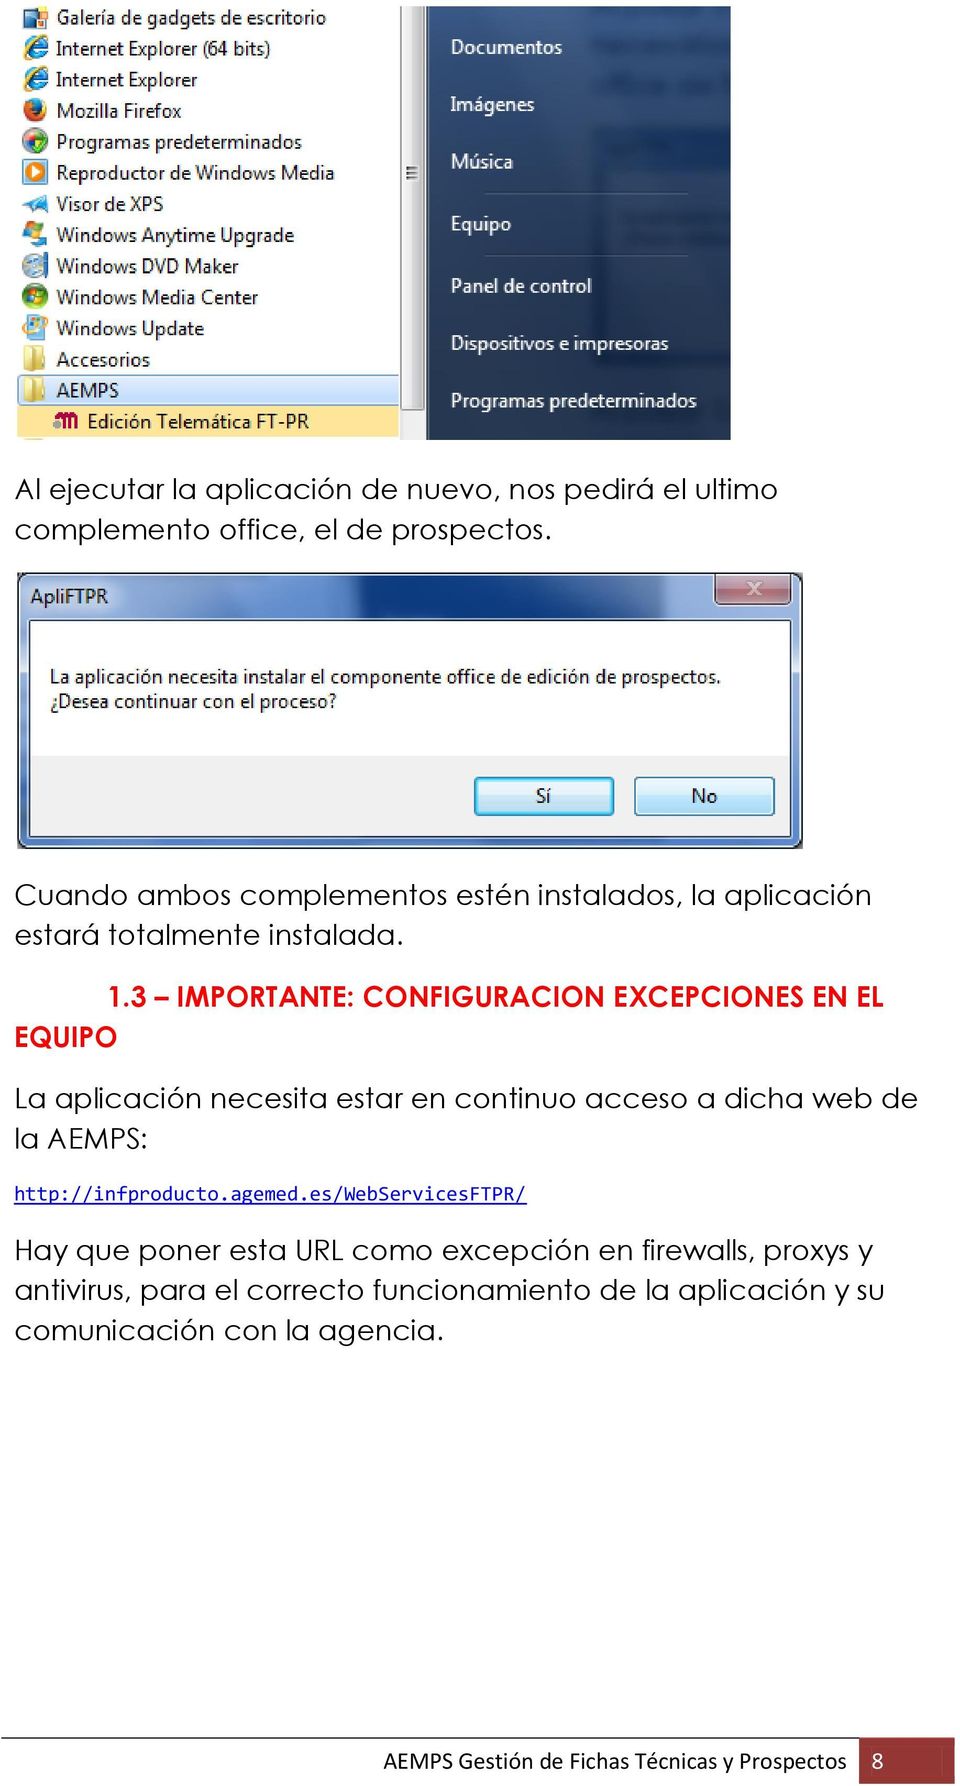 3 IMPORTANTE: CONFIGURACION EXCEPCIONES EN EL EQUIPO La aplicación necesita estar en continuo acceso a dicha web de la AEMPS: